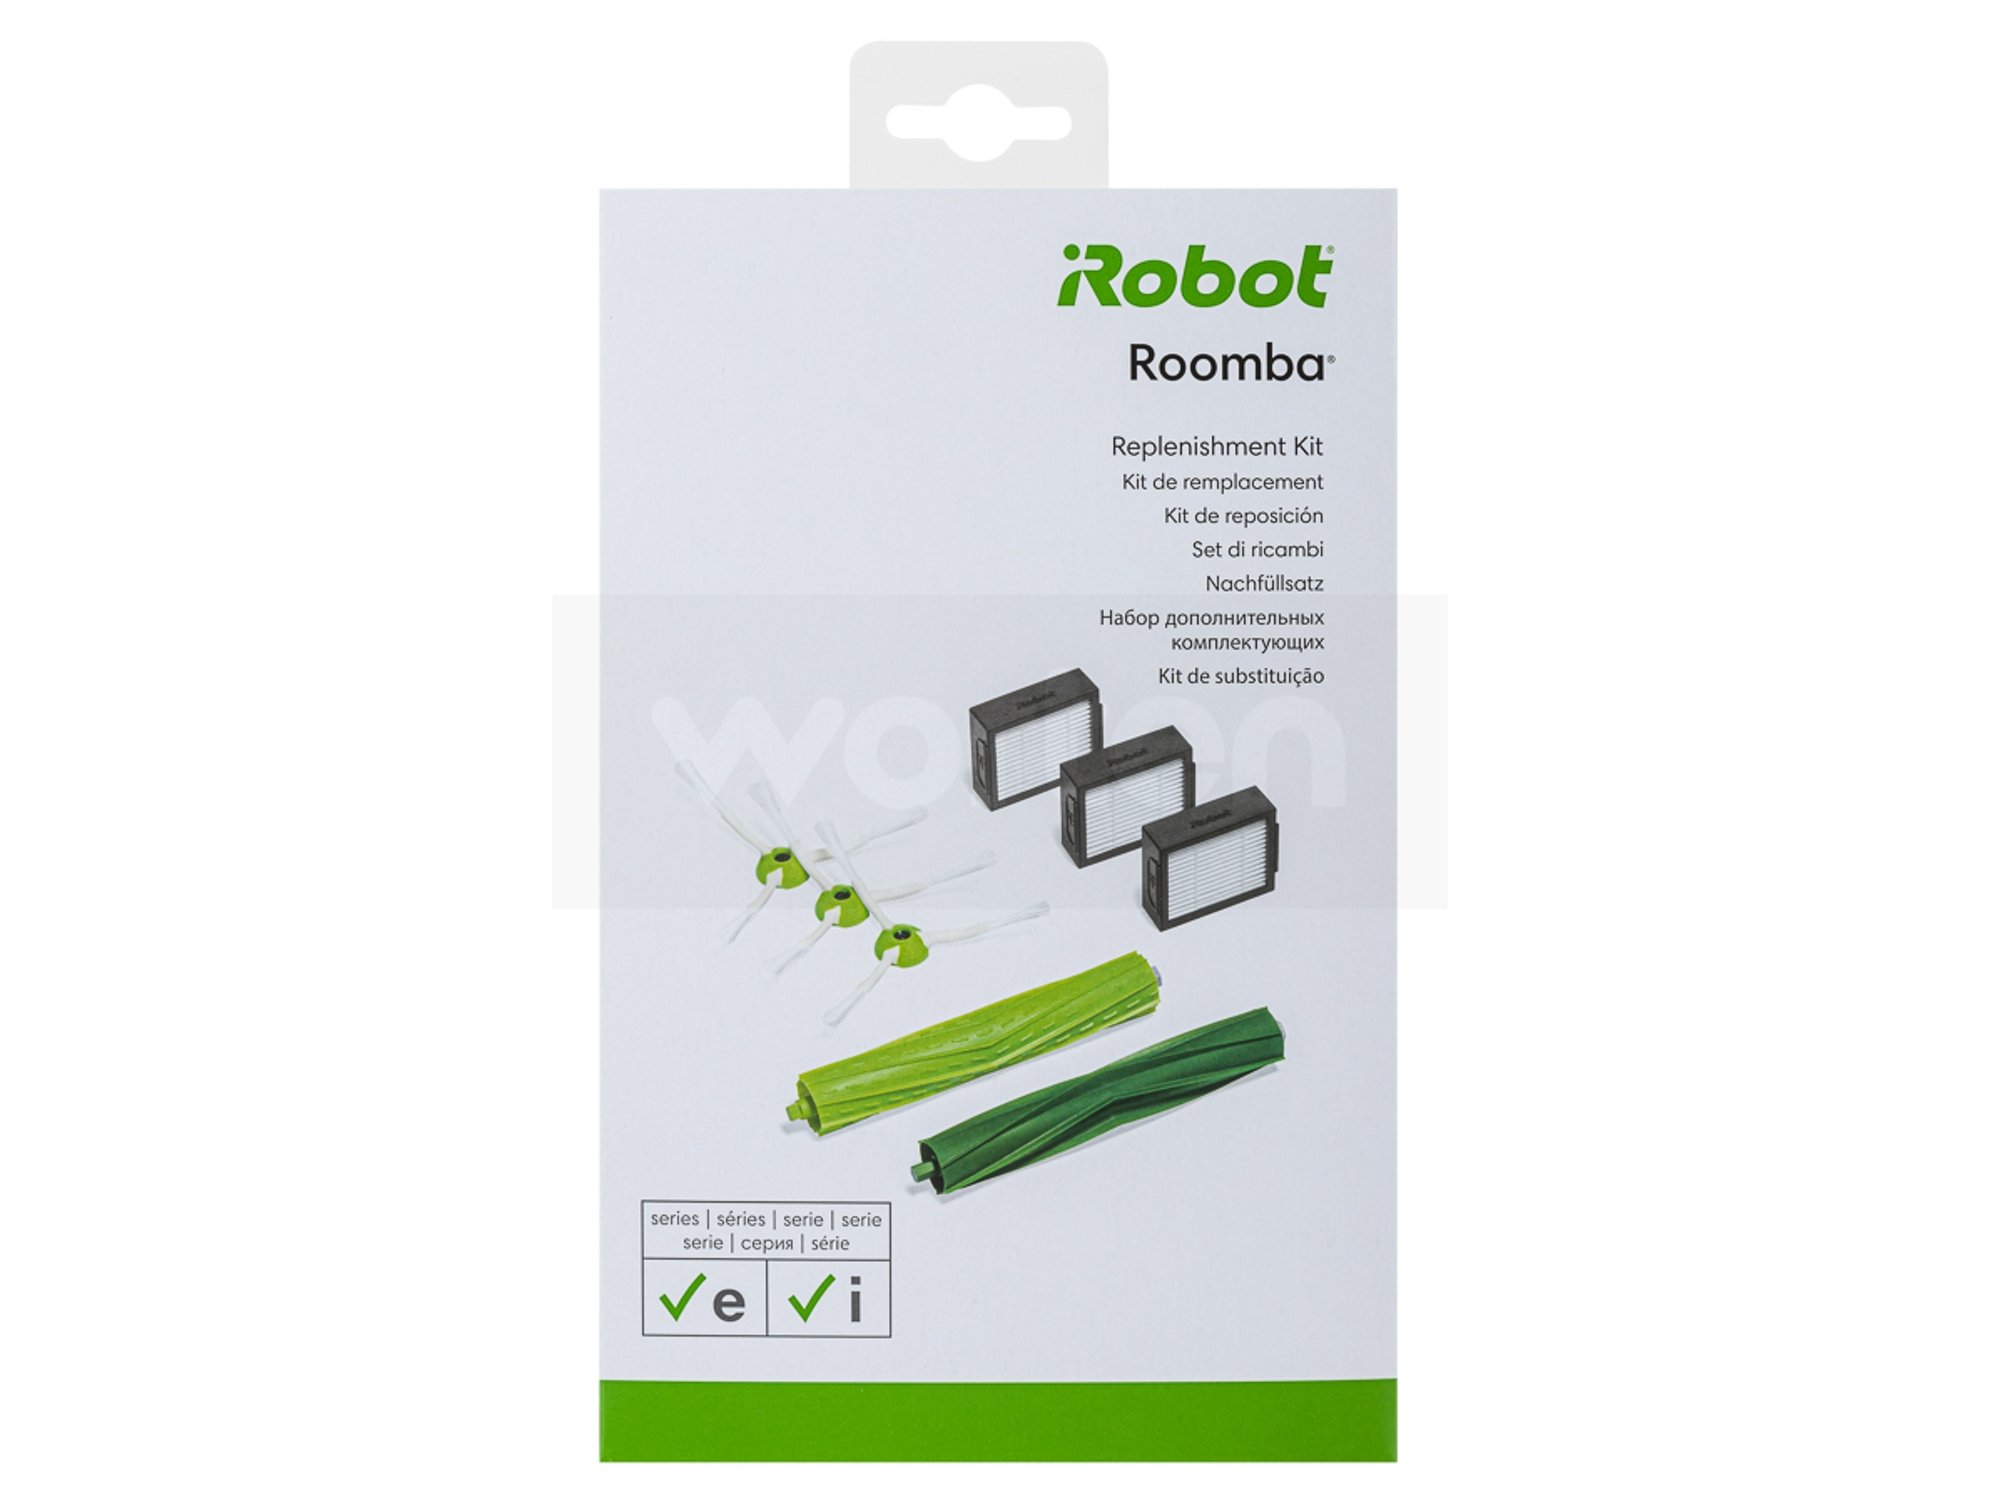 Set de accesorios de recambio para filtros y brosses iRobot Roomba